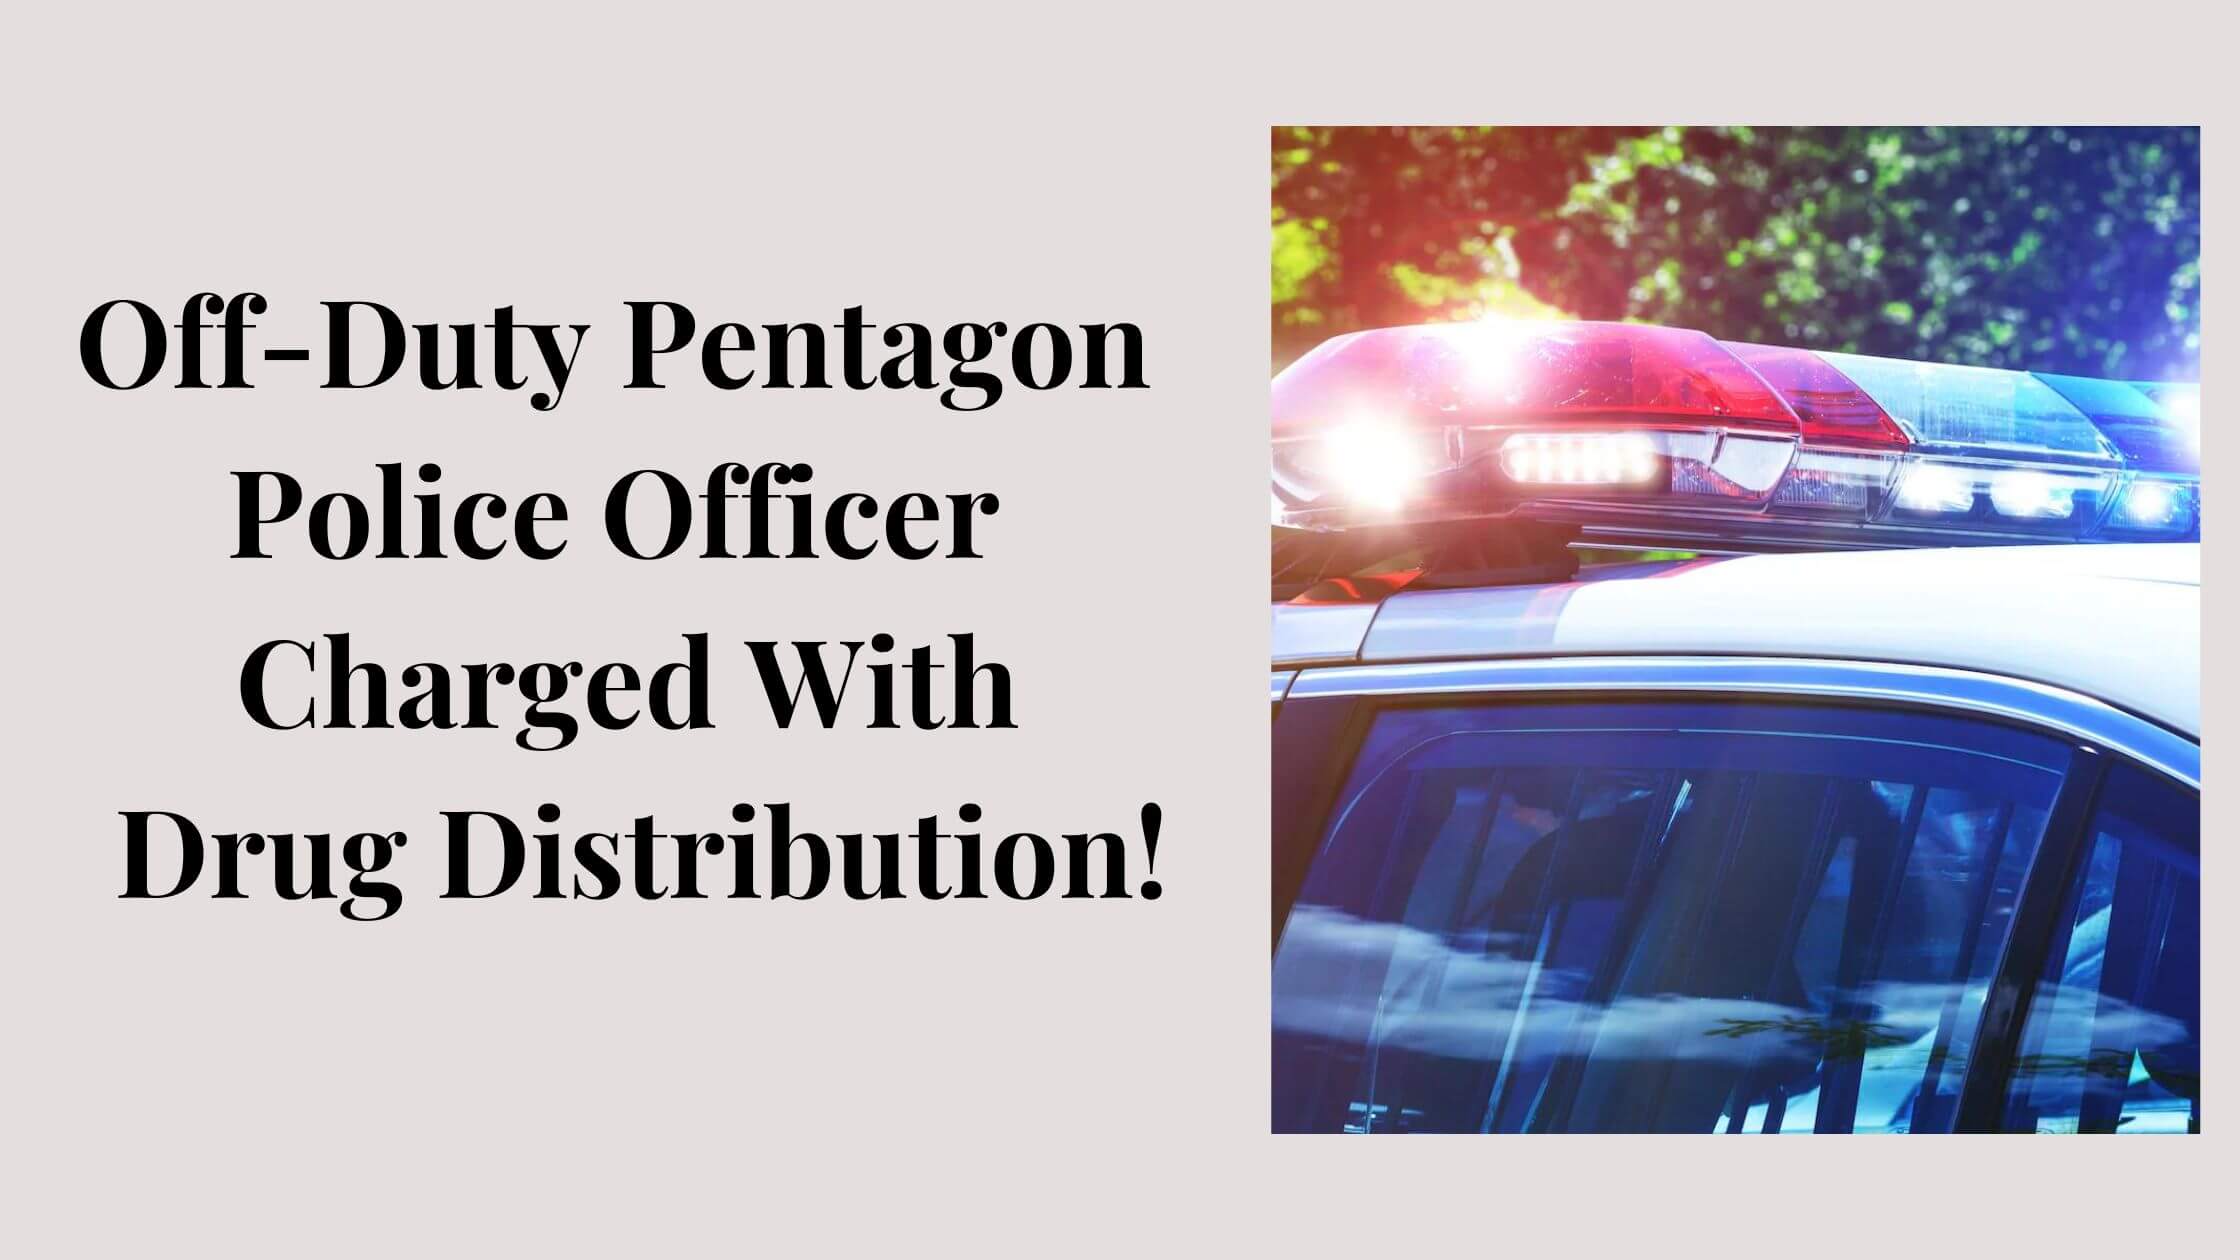 Pentagon Police Officer